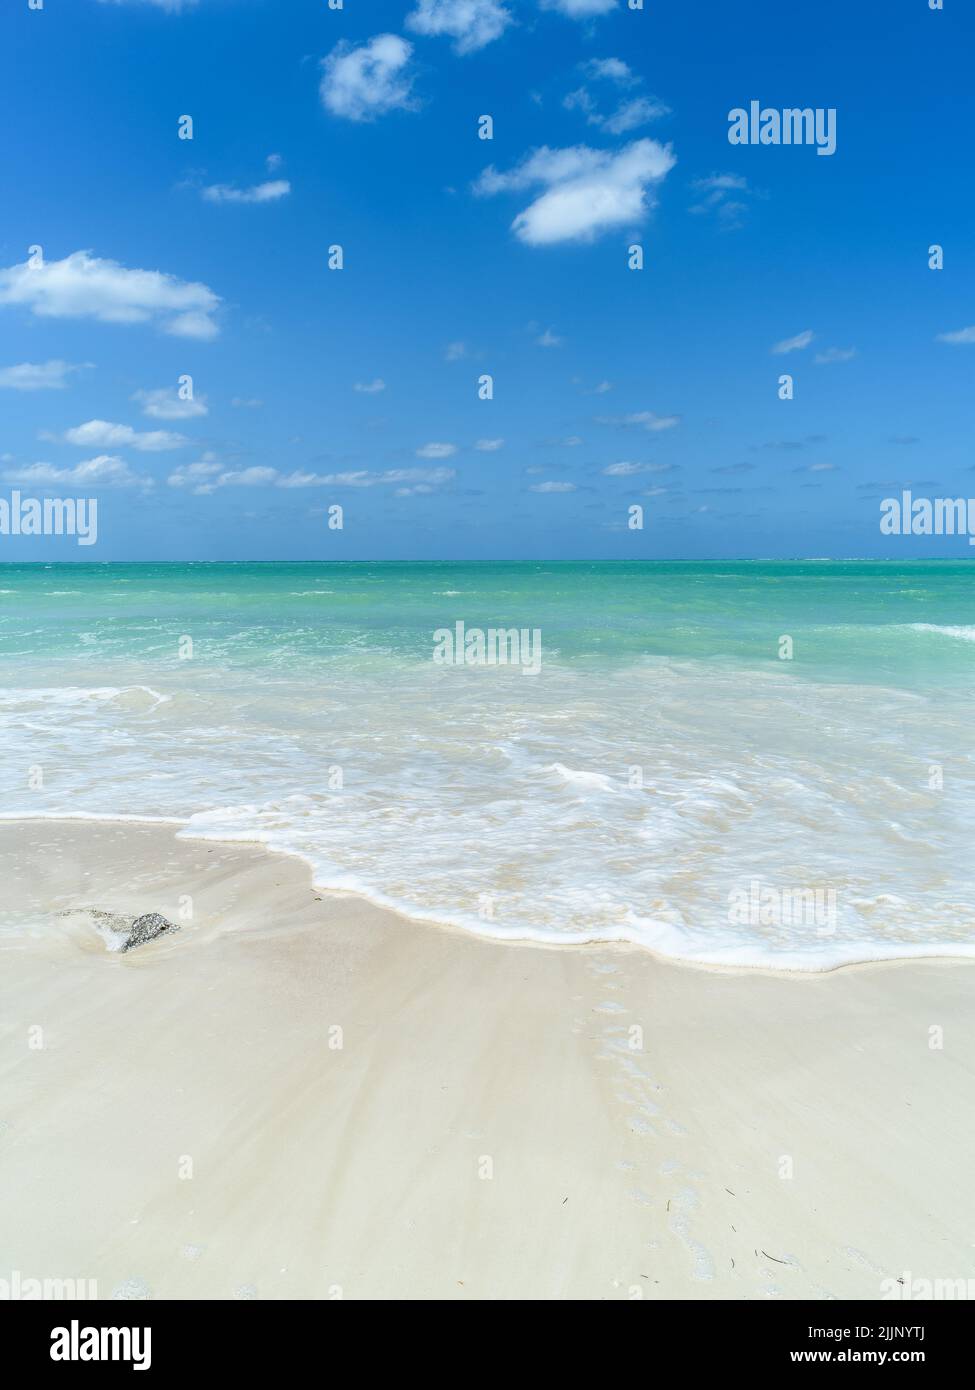 Plage cubaine, ciel bleu, eaux des Caraïbes, sable blanc Banque D'Images